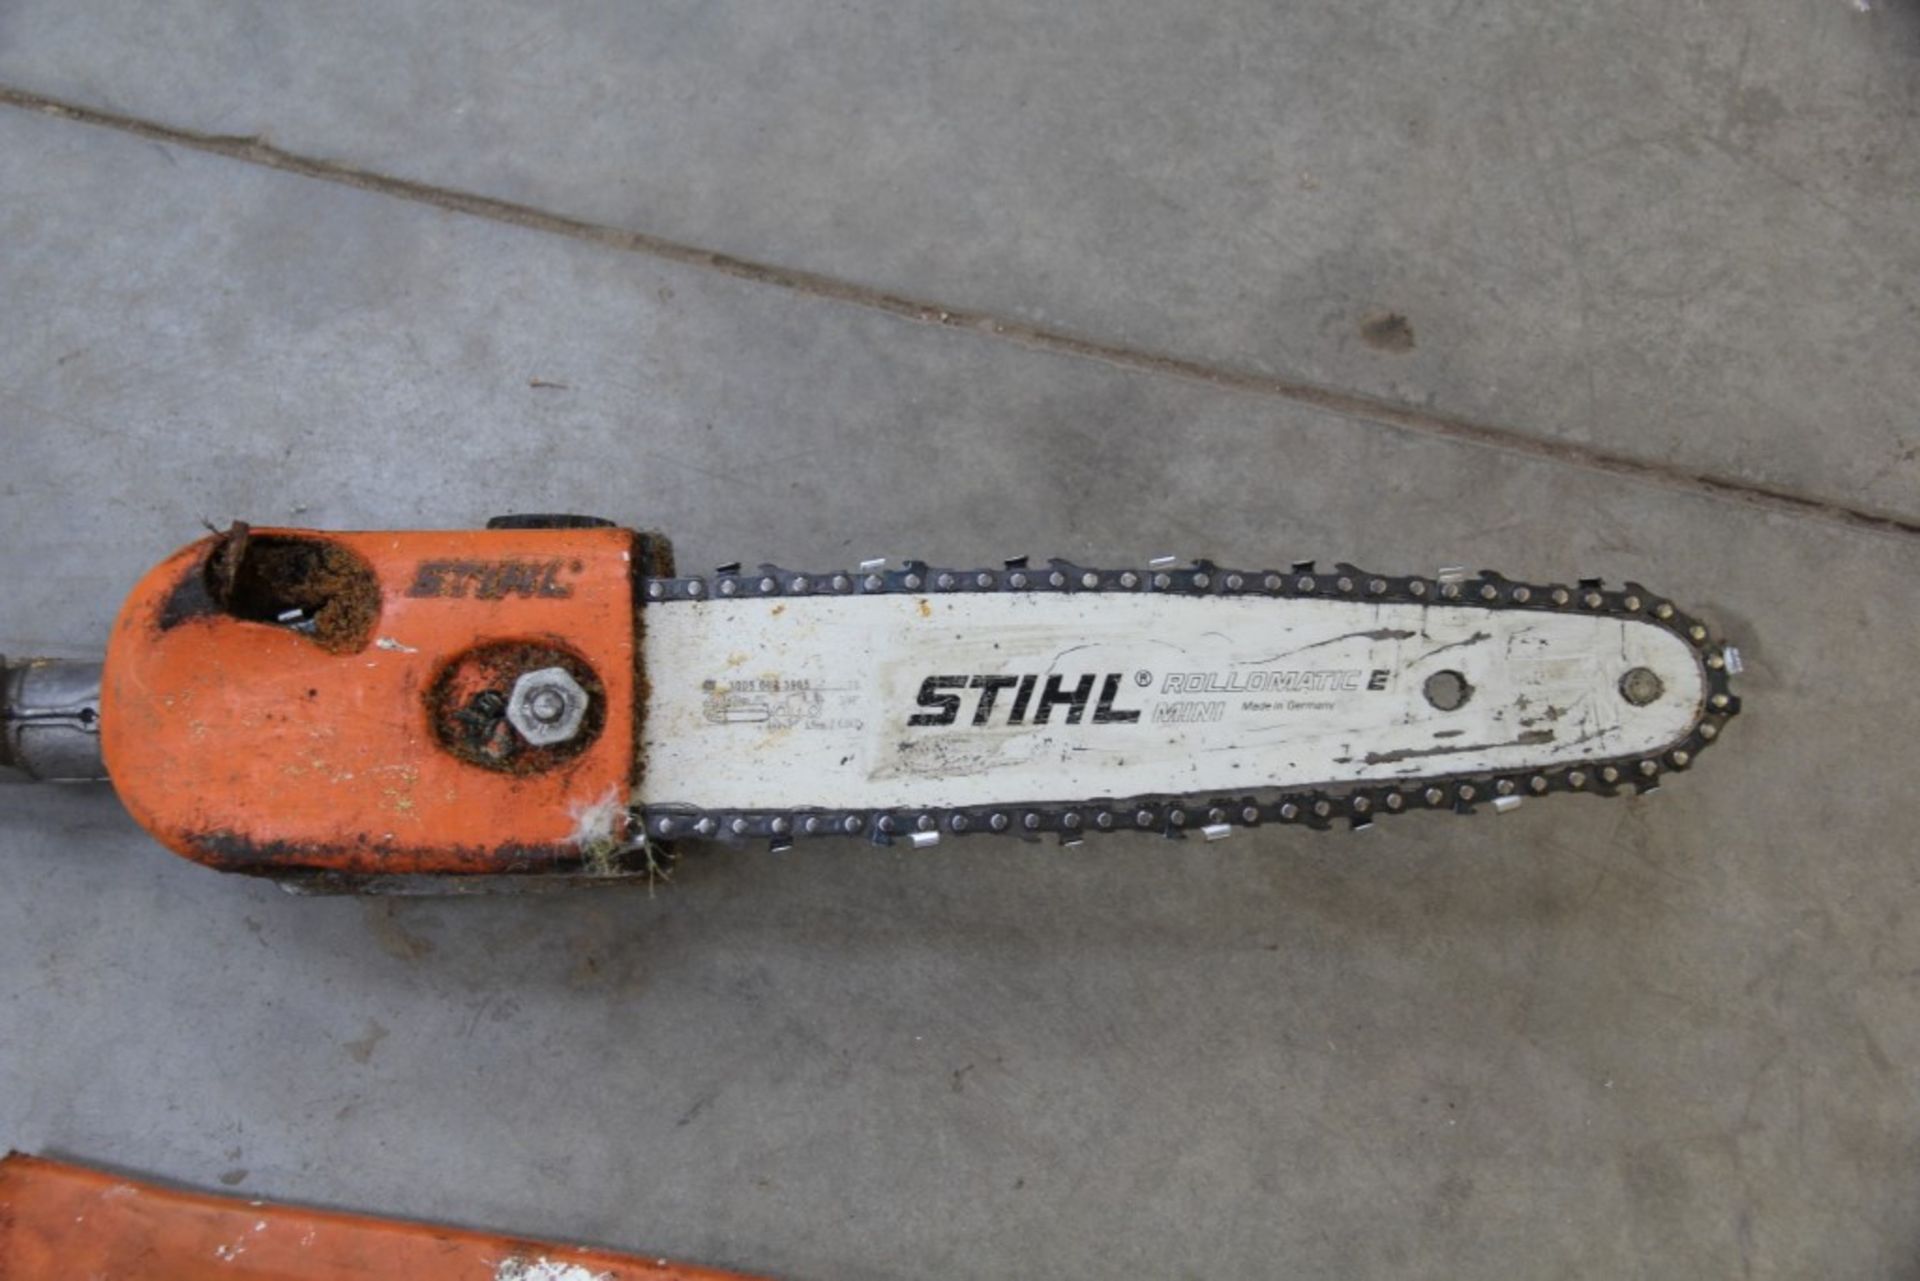 Stihl Rollomatic E Mini Long Reach Chain Saw Attachment - Image 2 of 4